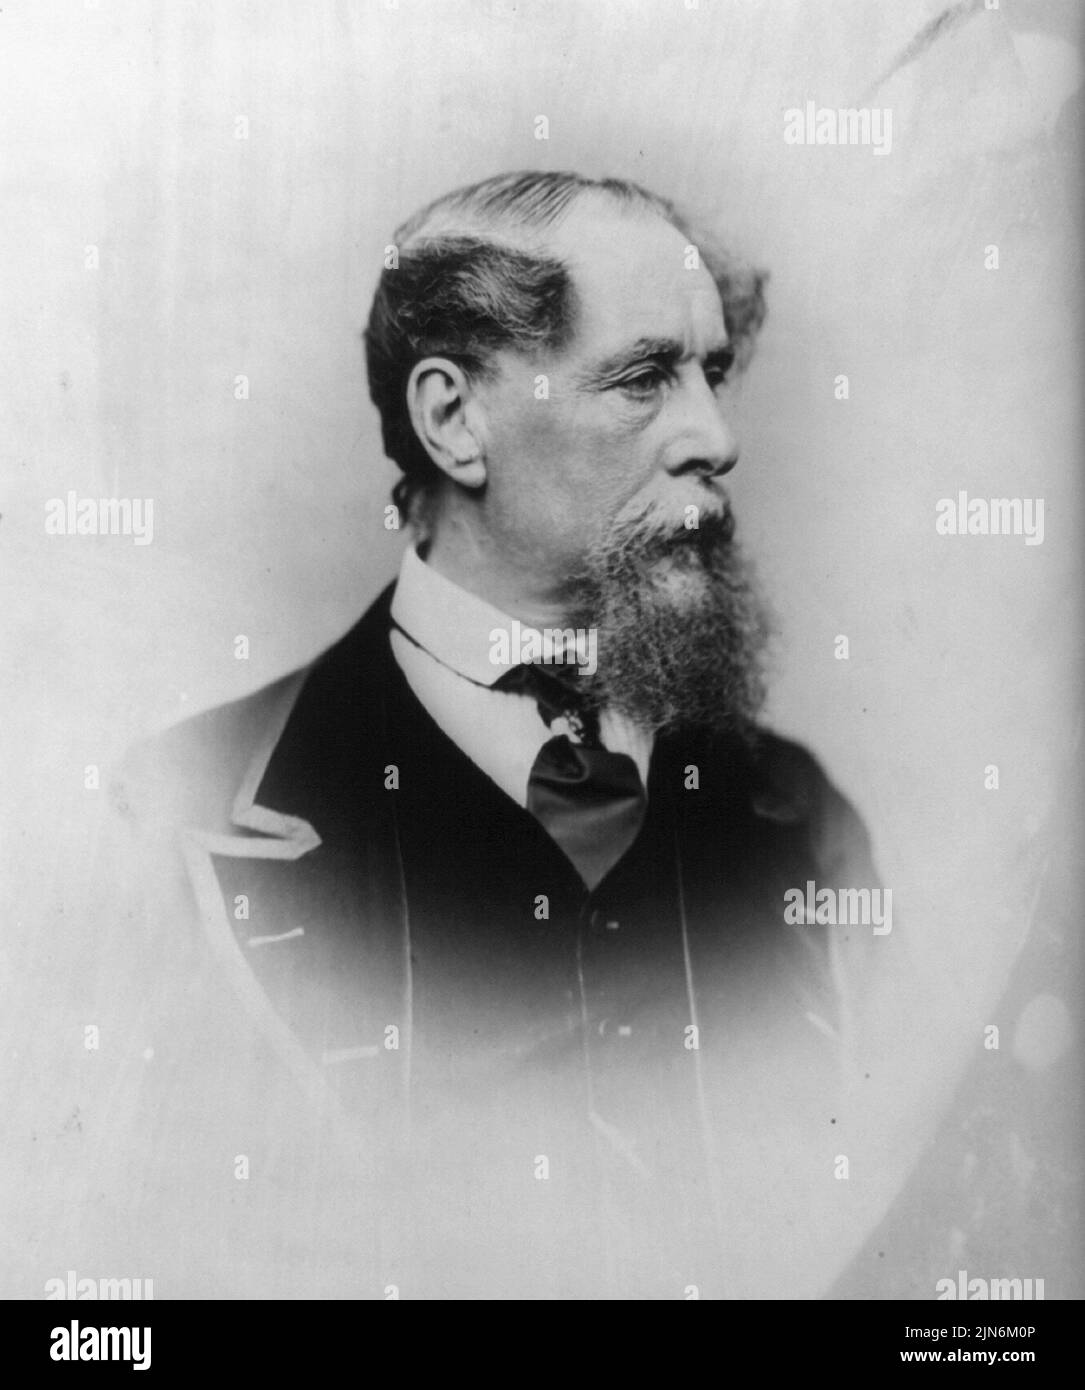 Retrato de uno de los escritores más famosos de la historia en lengua inglesa - Charles Dickensd - Foto: Geopix Foto de stock